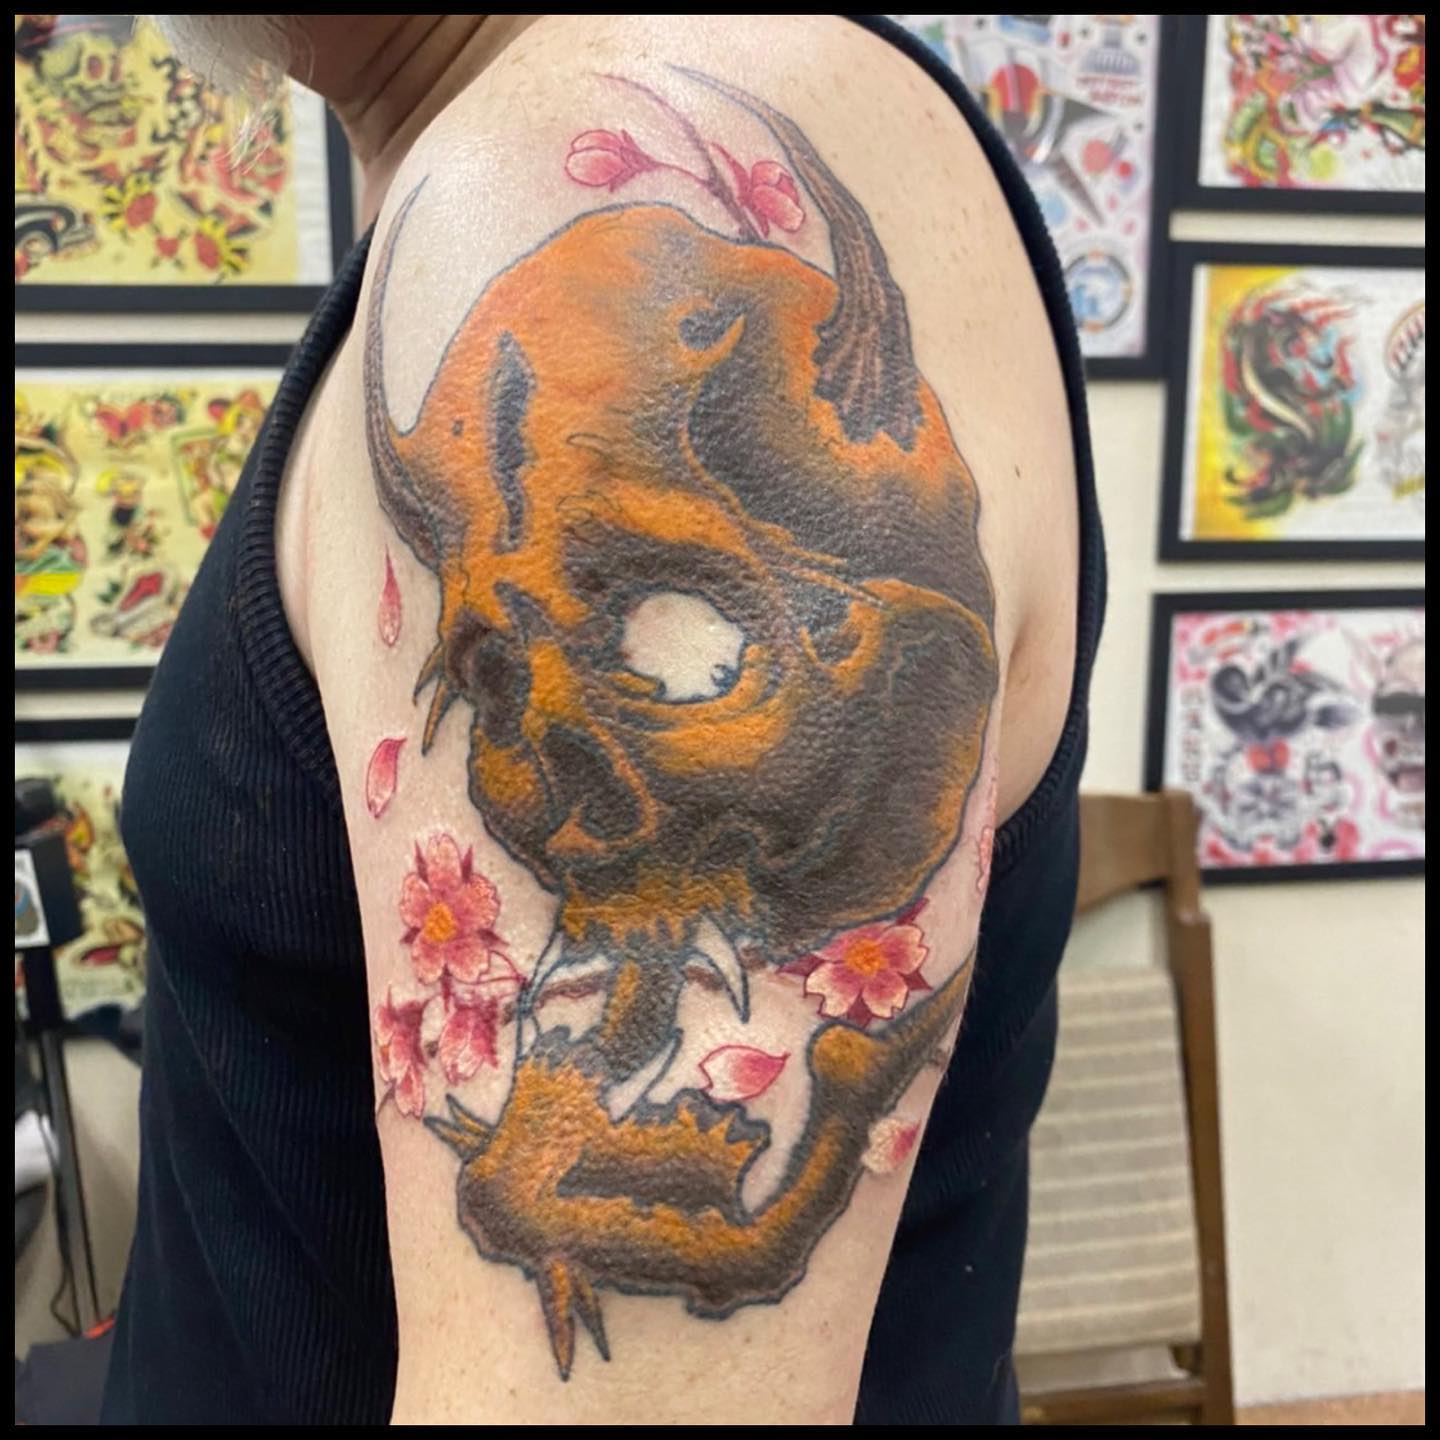 腕 #スカル#skull #skulltattoo #tattoo #ink #freehand #color #horimasa #tokyo #56 #56tattoo #スカル #ガイコツ #タトゥー #スミ #イレズミ #フリーハンド #カラー #ホリマサ #骸骨 #刺青 #墨 #彫雅 #東京